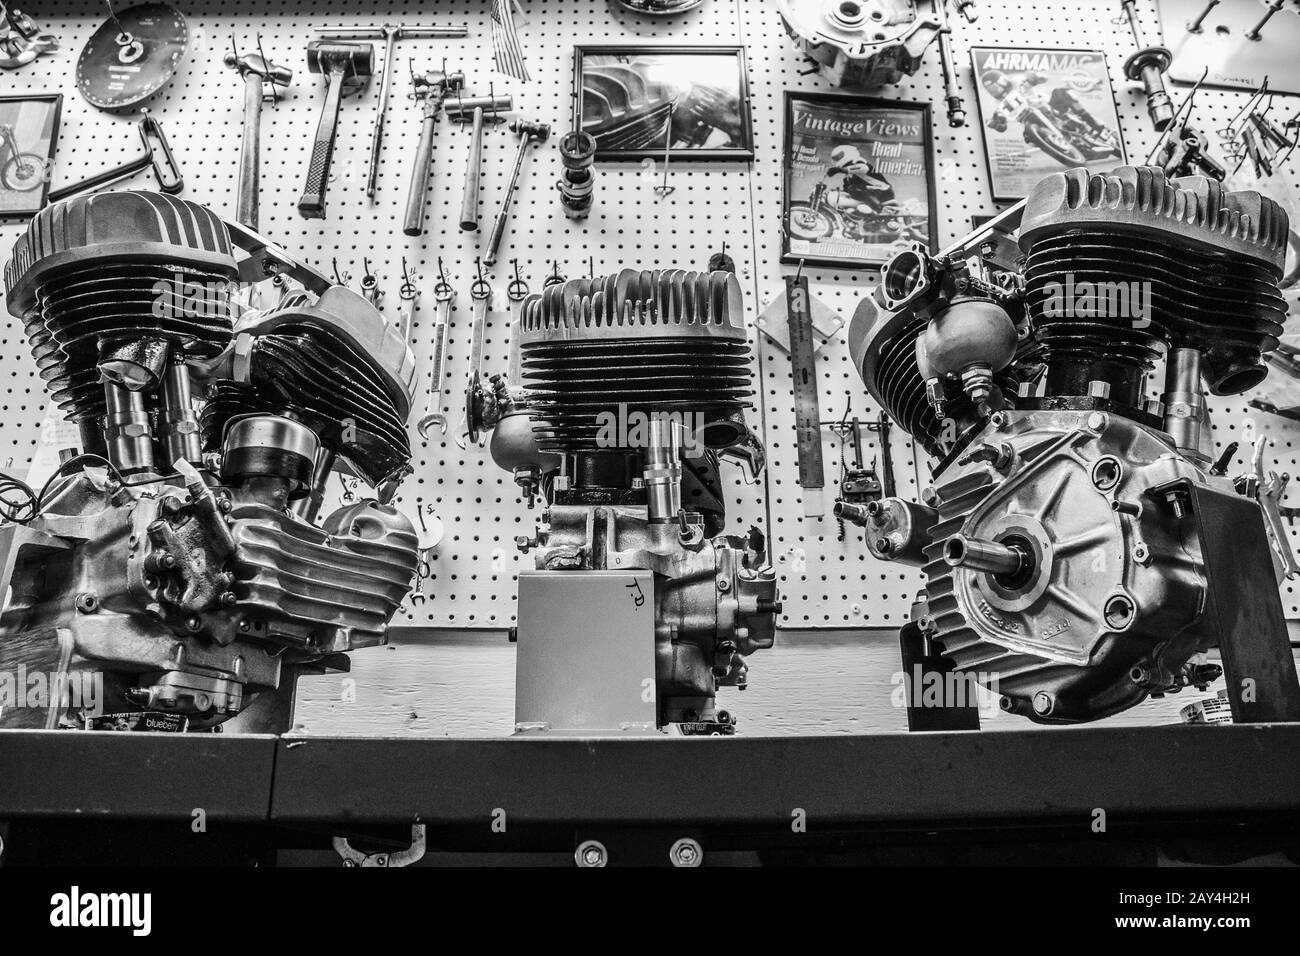 Drei alte harley davidson Motoren sind in einer Motorradwerkstatt ausgestellt. Stockfoto